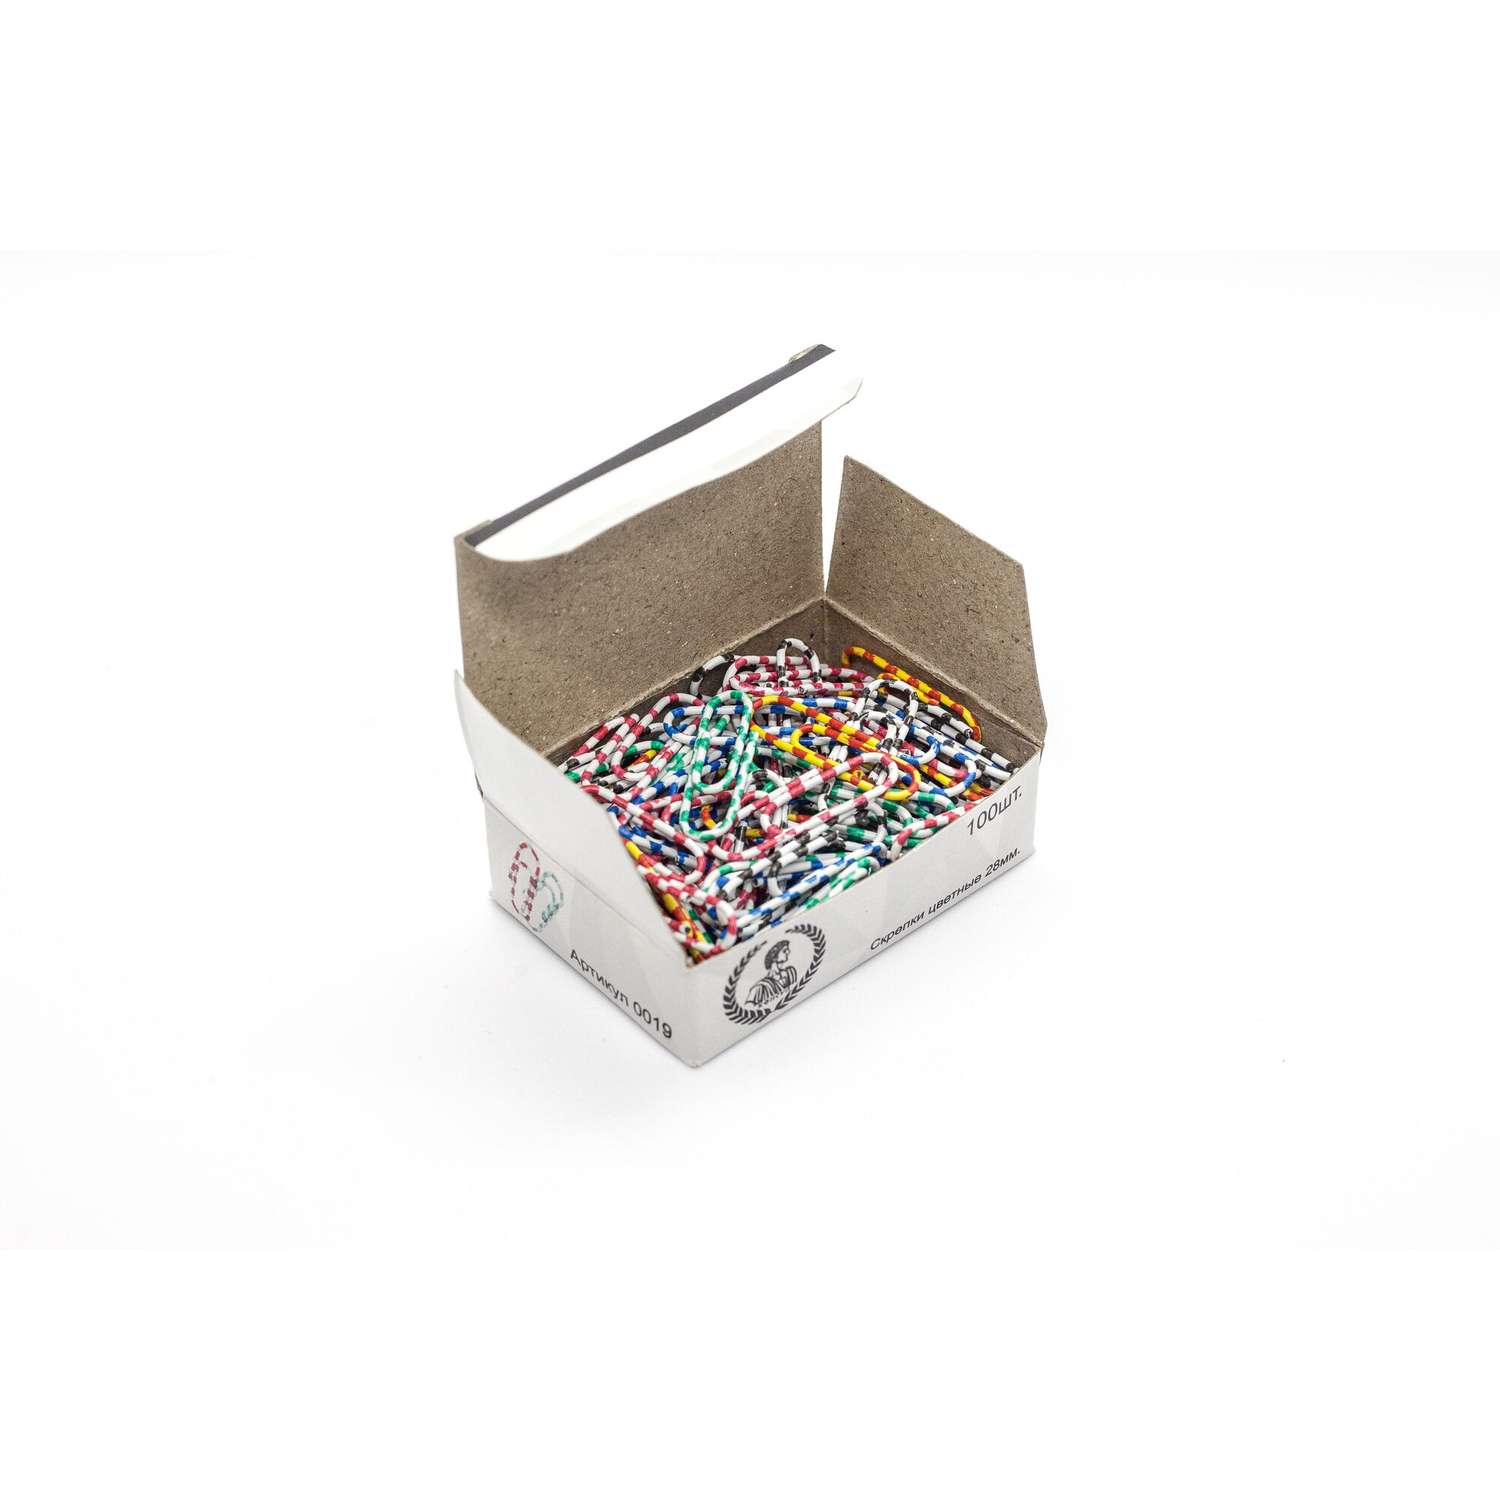 Скрепки 28 мм цветные-зебра Консул 100 шт в картонной коробке - фото 6